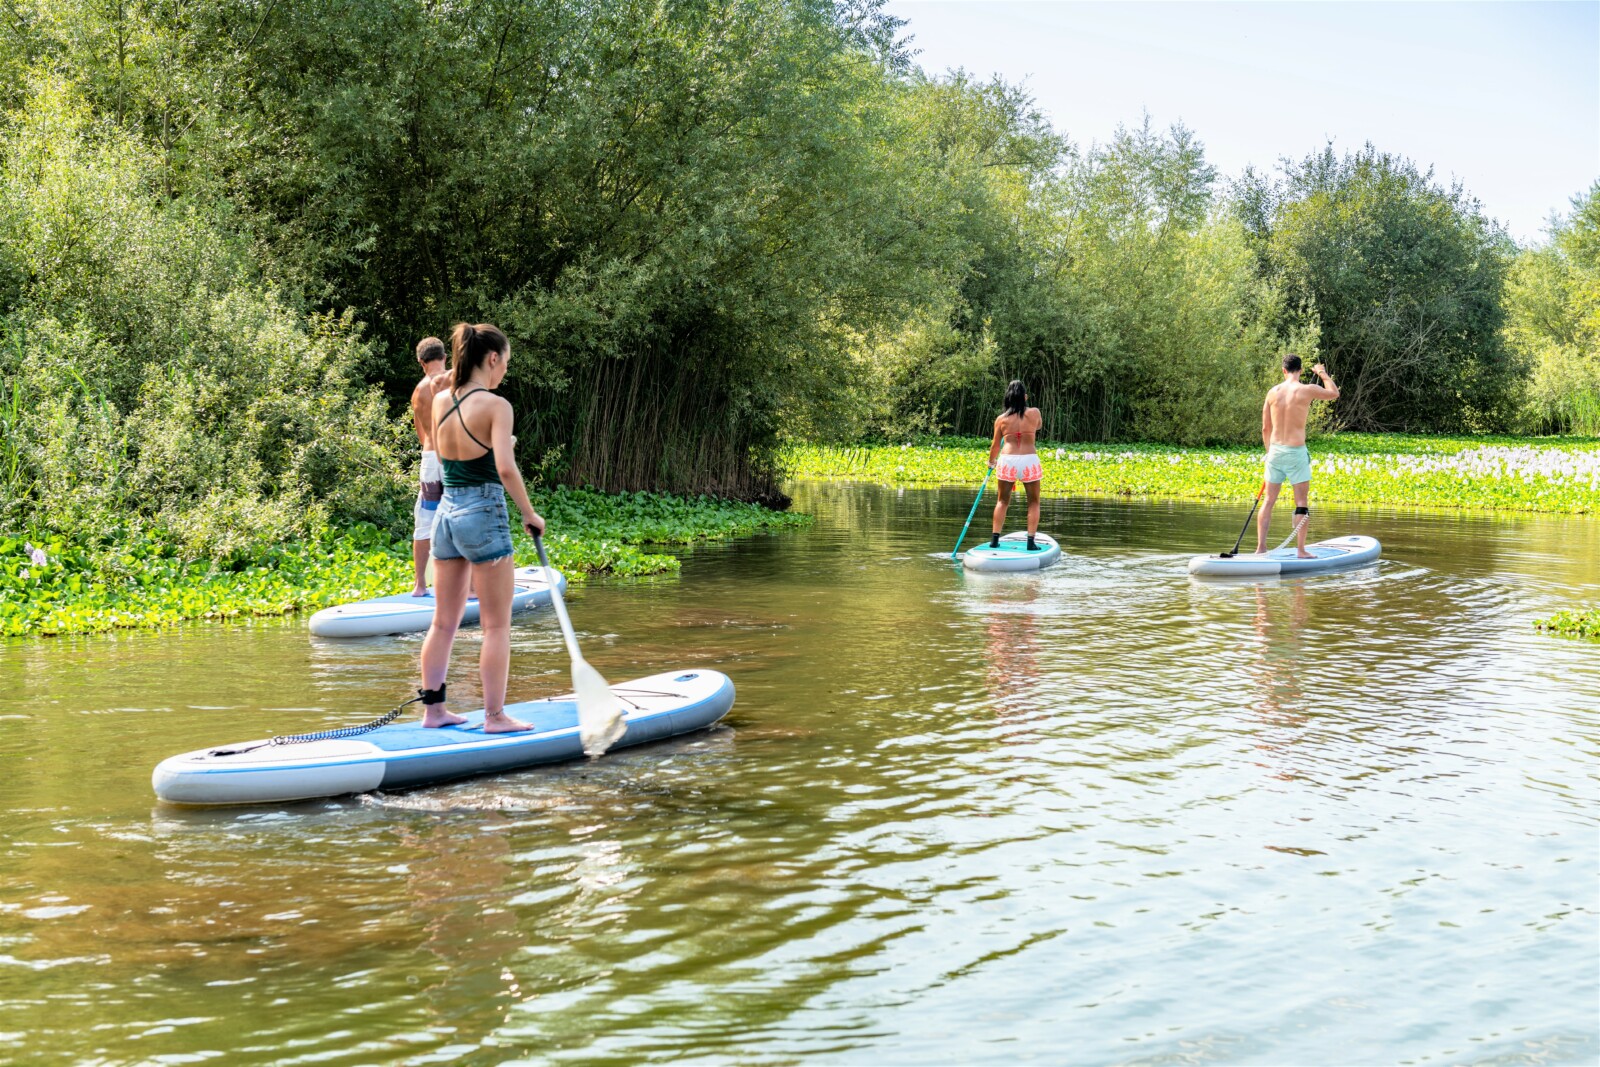 Frauen und Männer beim Stand-Up Paddleboarding auf einem Fluss.